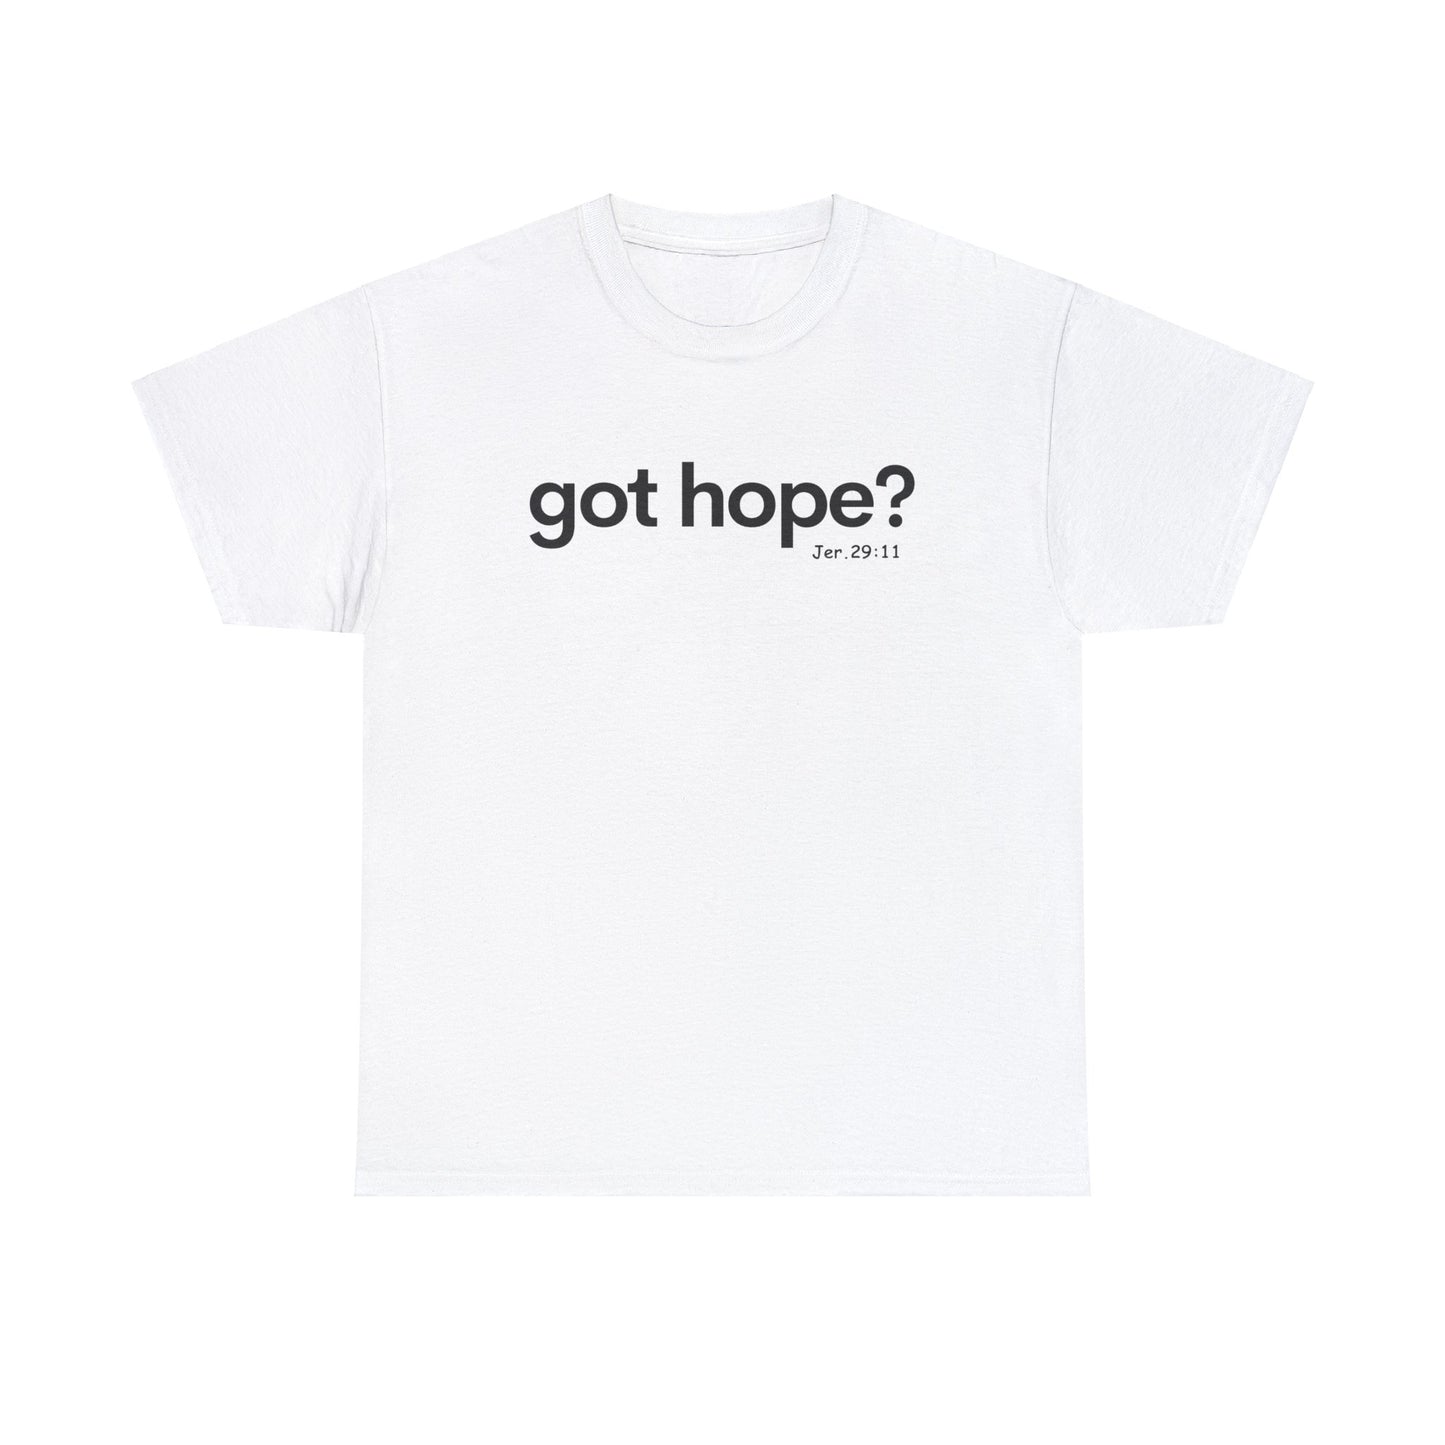 Got Hope? Jeremiah 29:11 tshirt